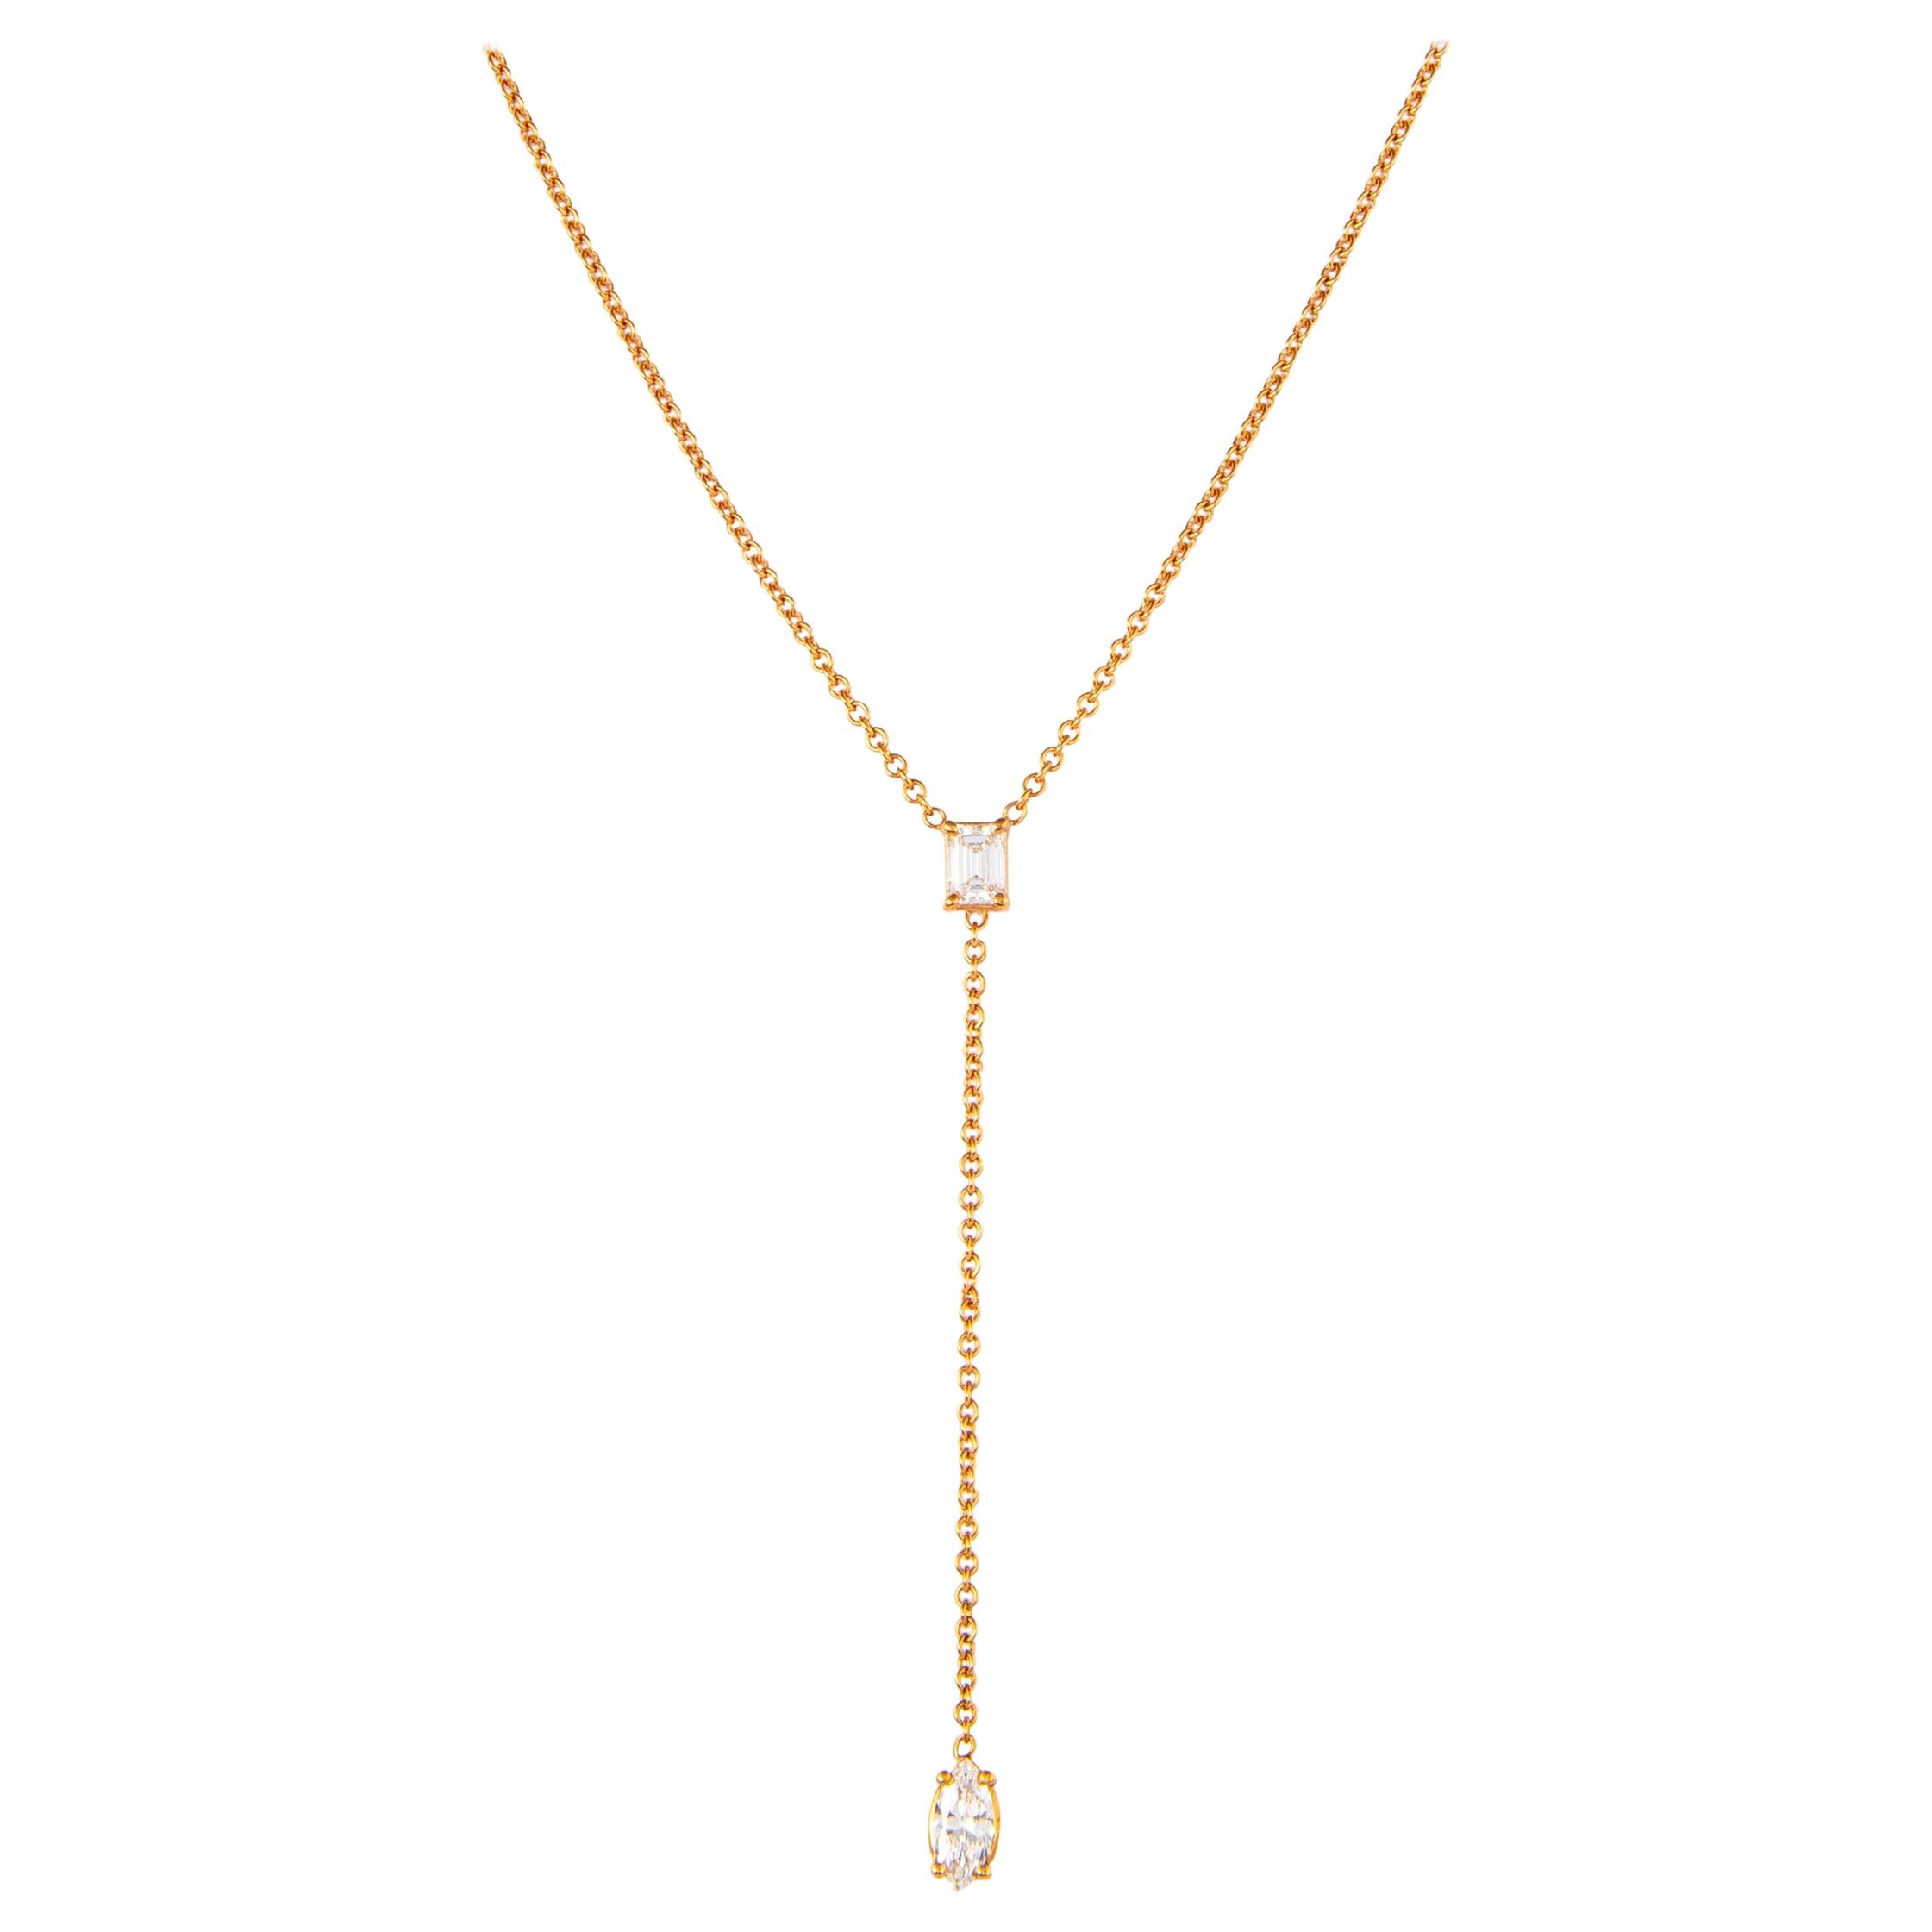 Alexander 0.83 Carat Emerald Cut Diamond Drop Necklace 18 Karat Rose Gold